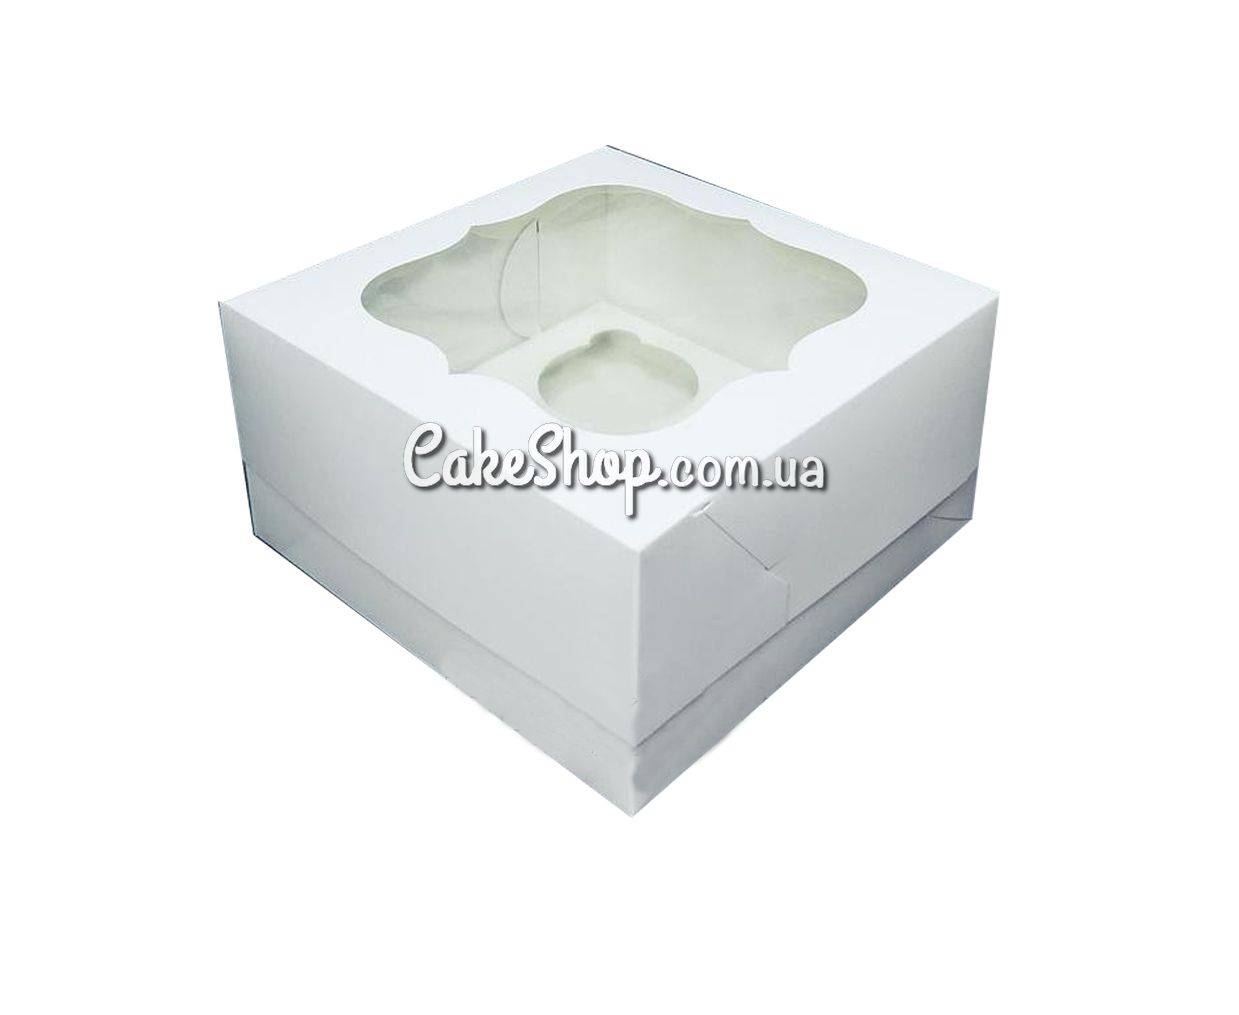 ⋗ Коробка на 4 кекса с фигурным окном Белая, 17х17х9 см купить в Украине ➛ CakeShop.com.ua, фото